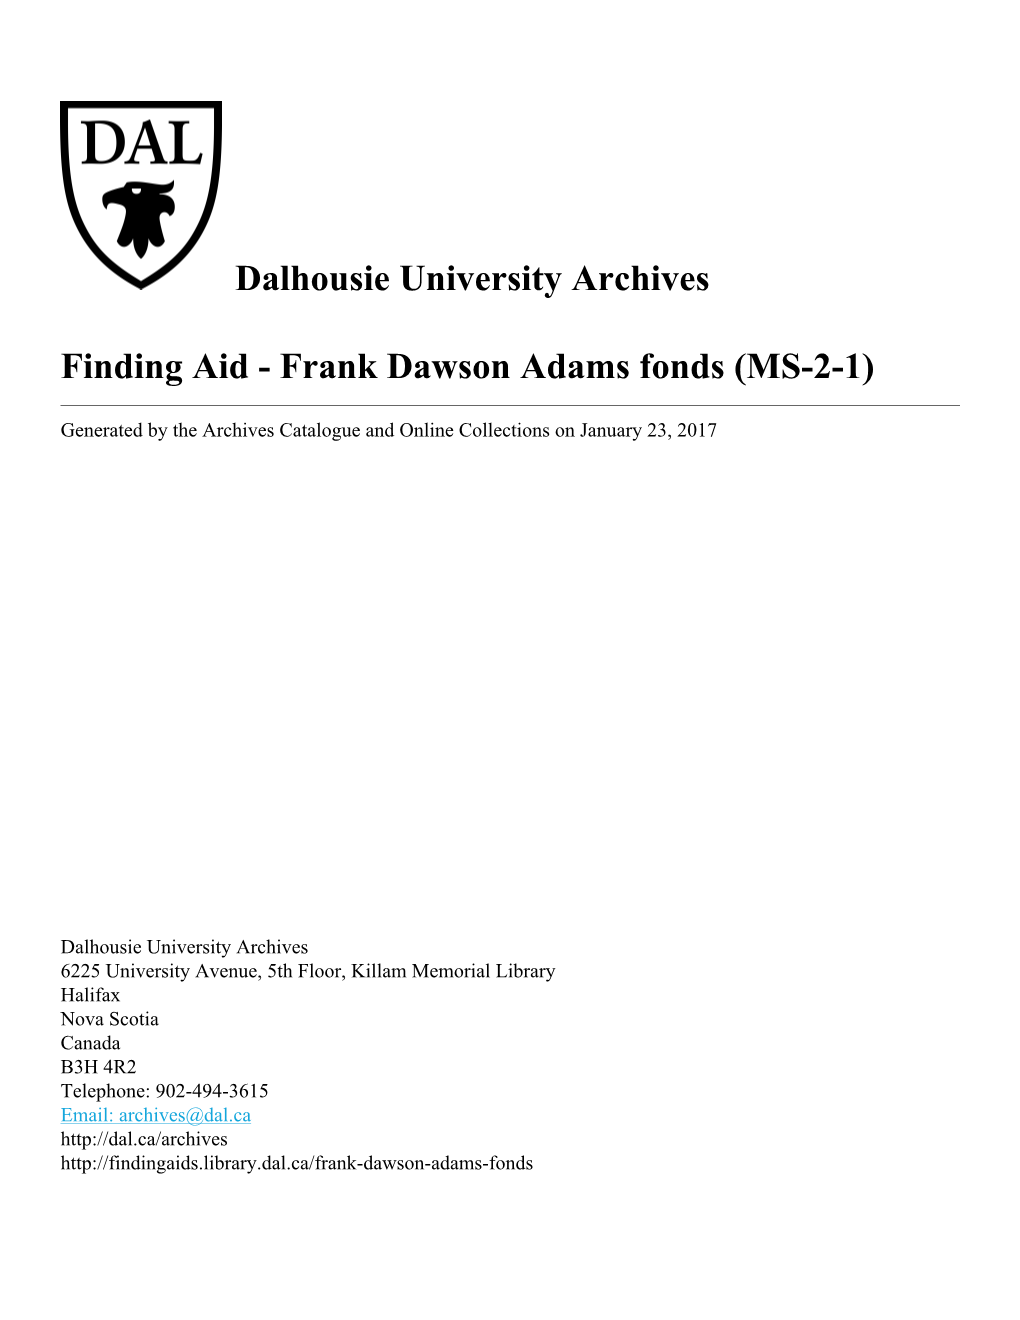 Frank Dawson Adams Fonds (MS-2-1)